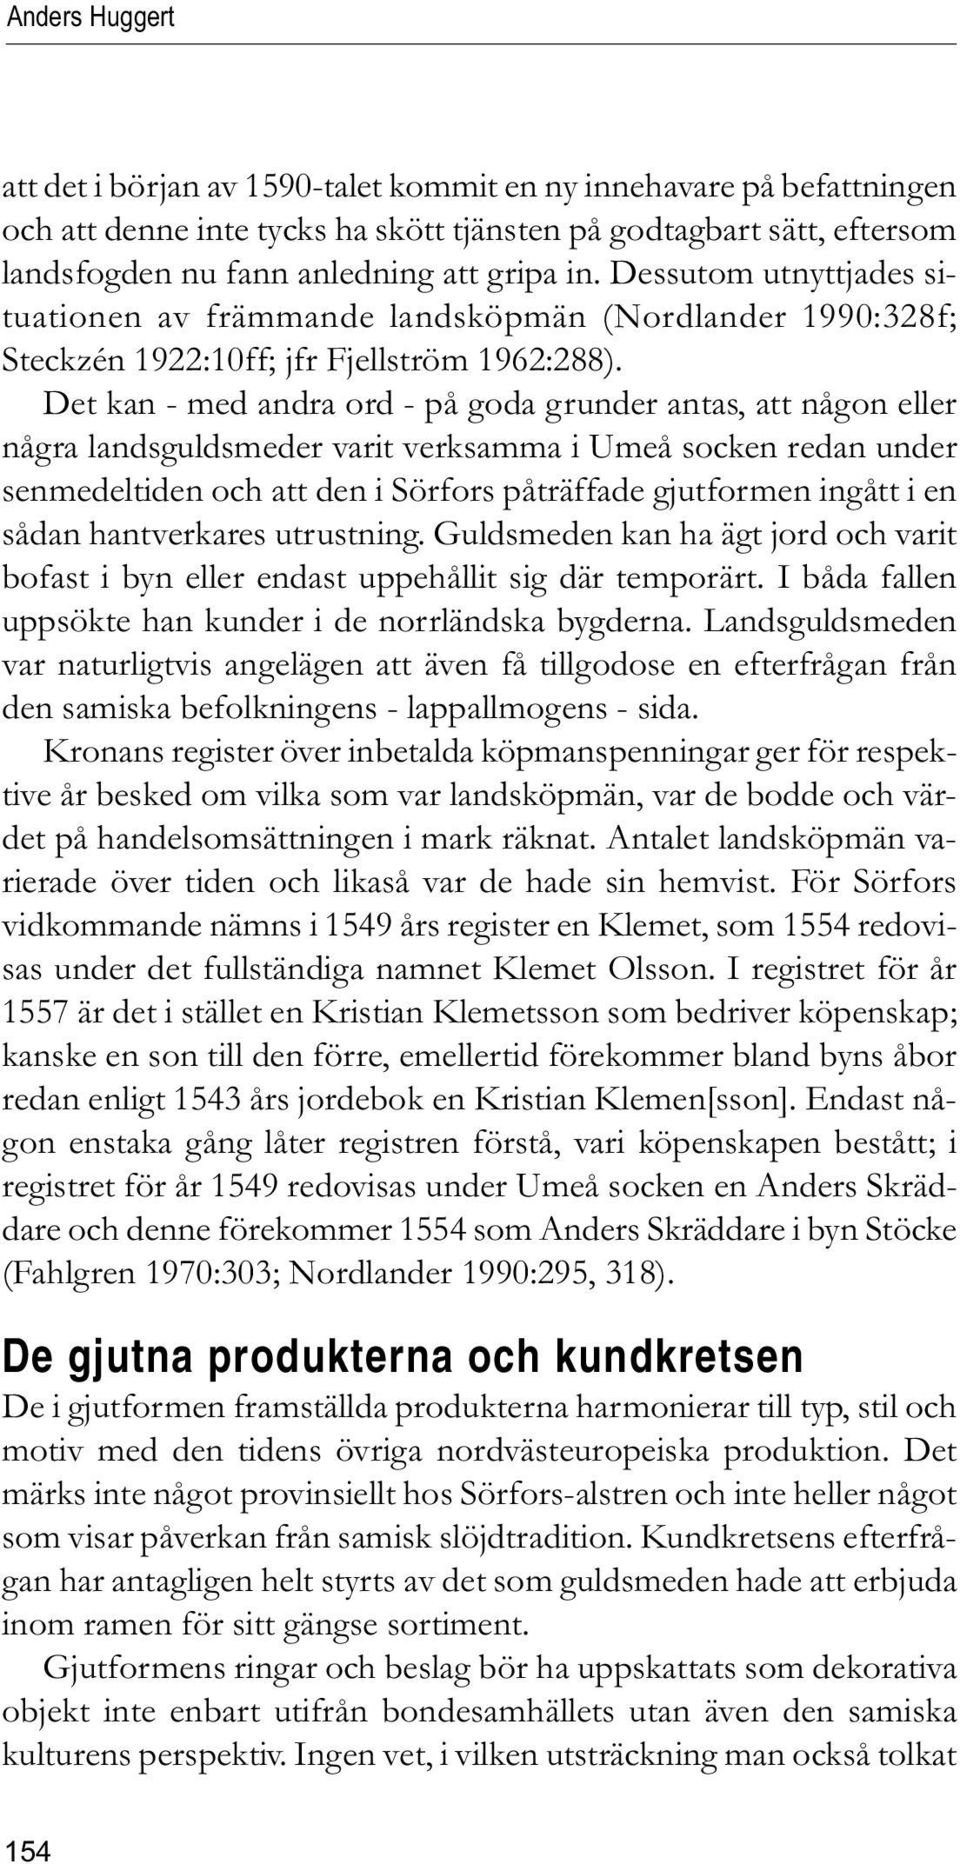 Det kan - med andra ord - på goda grunder antas, att någon eller några landsguldsmeder varit verksamma i Umeå socken redan under senmedeltiden och att den i Sörfors påträffade gjutformen ingått i en